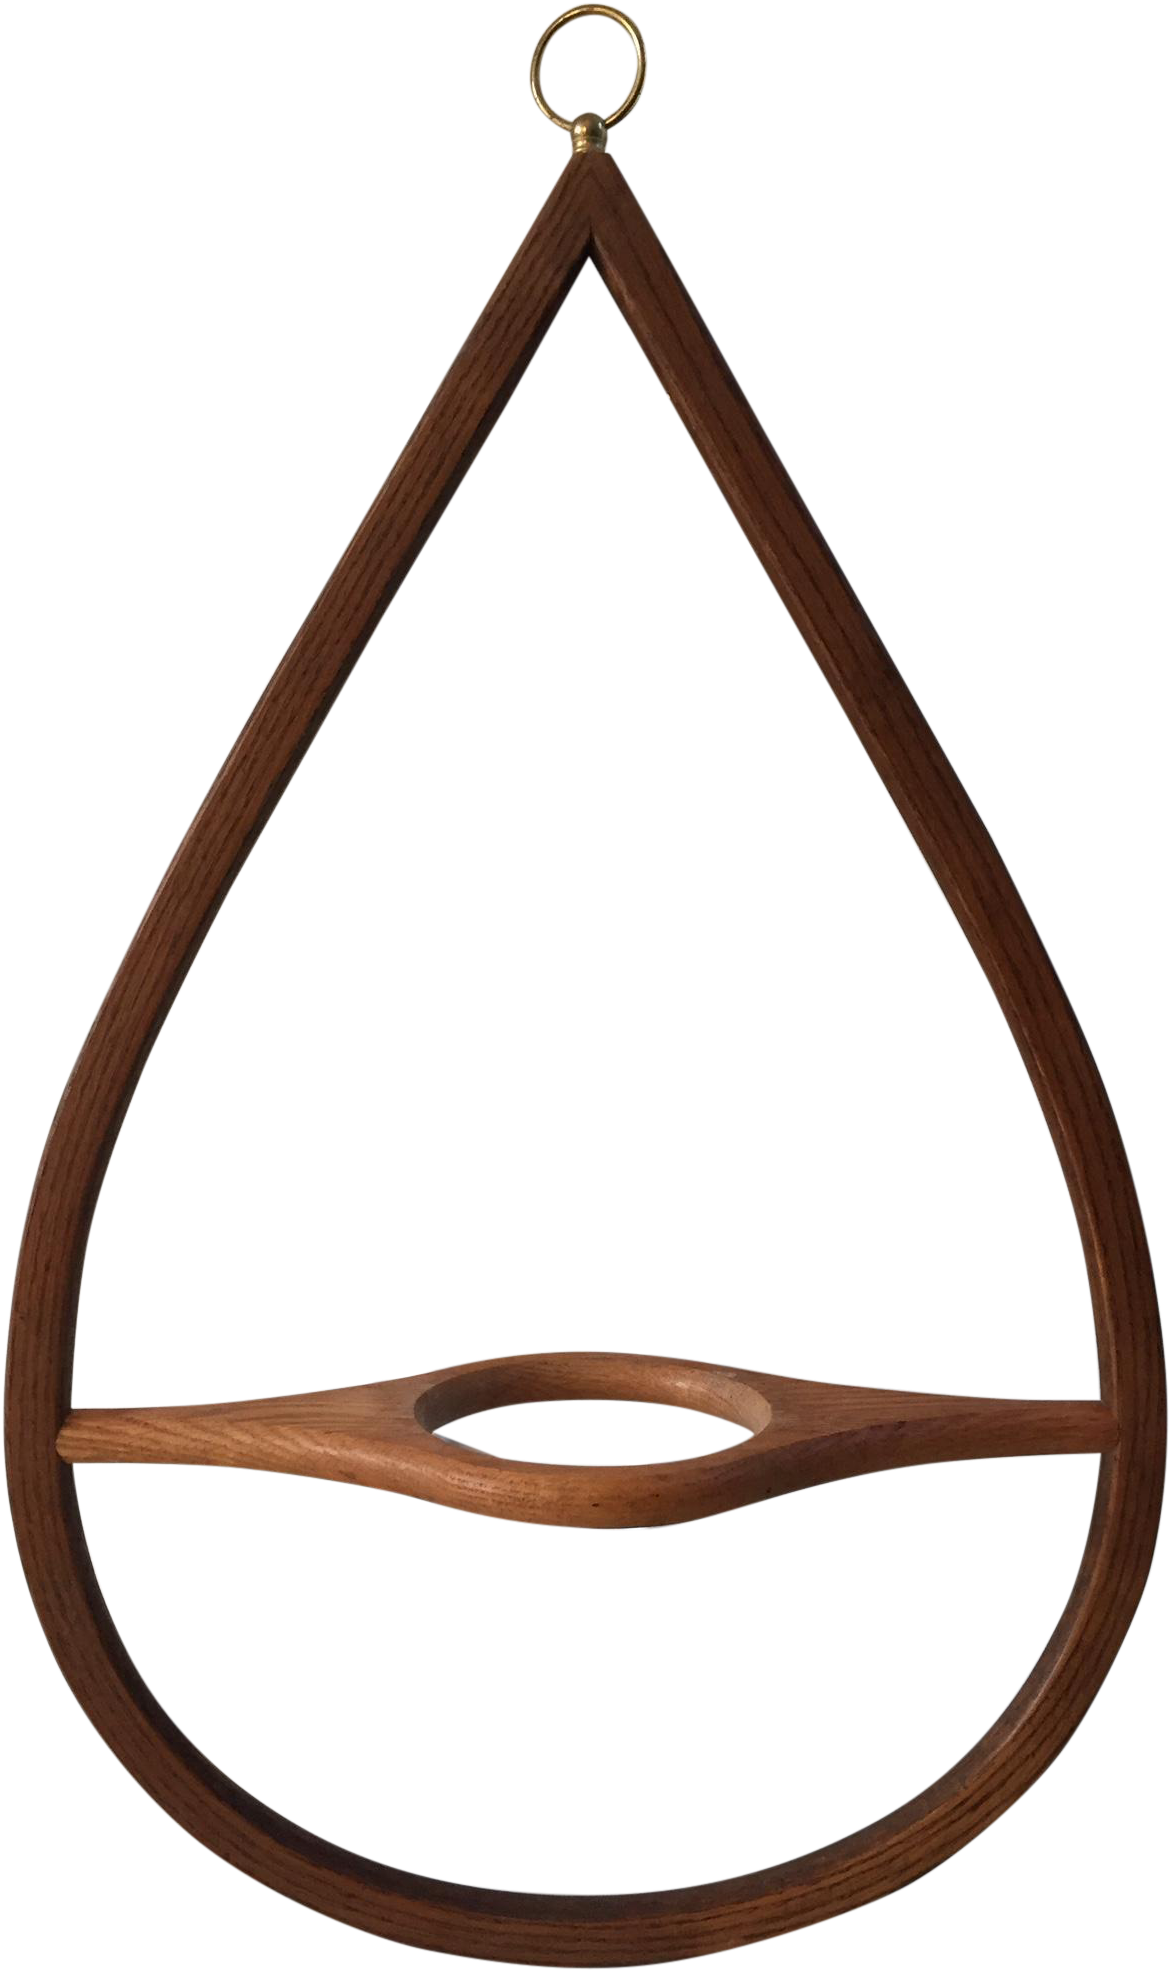 Wooden Teardrop Swing Chair